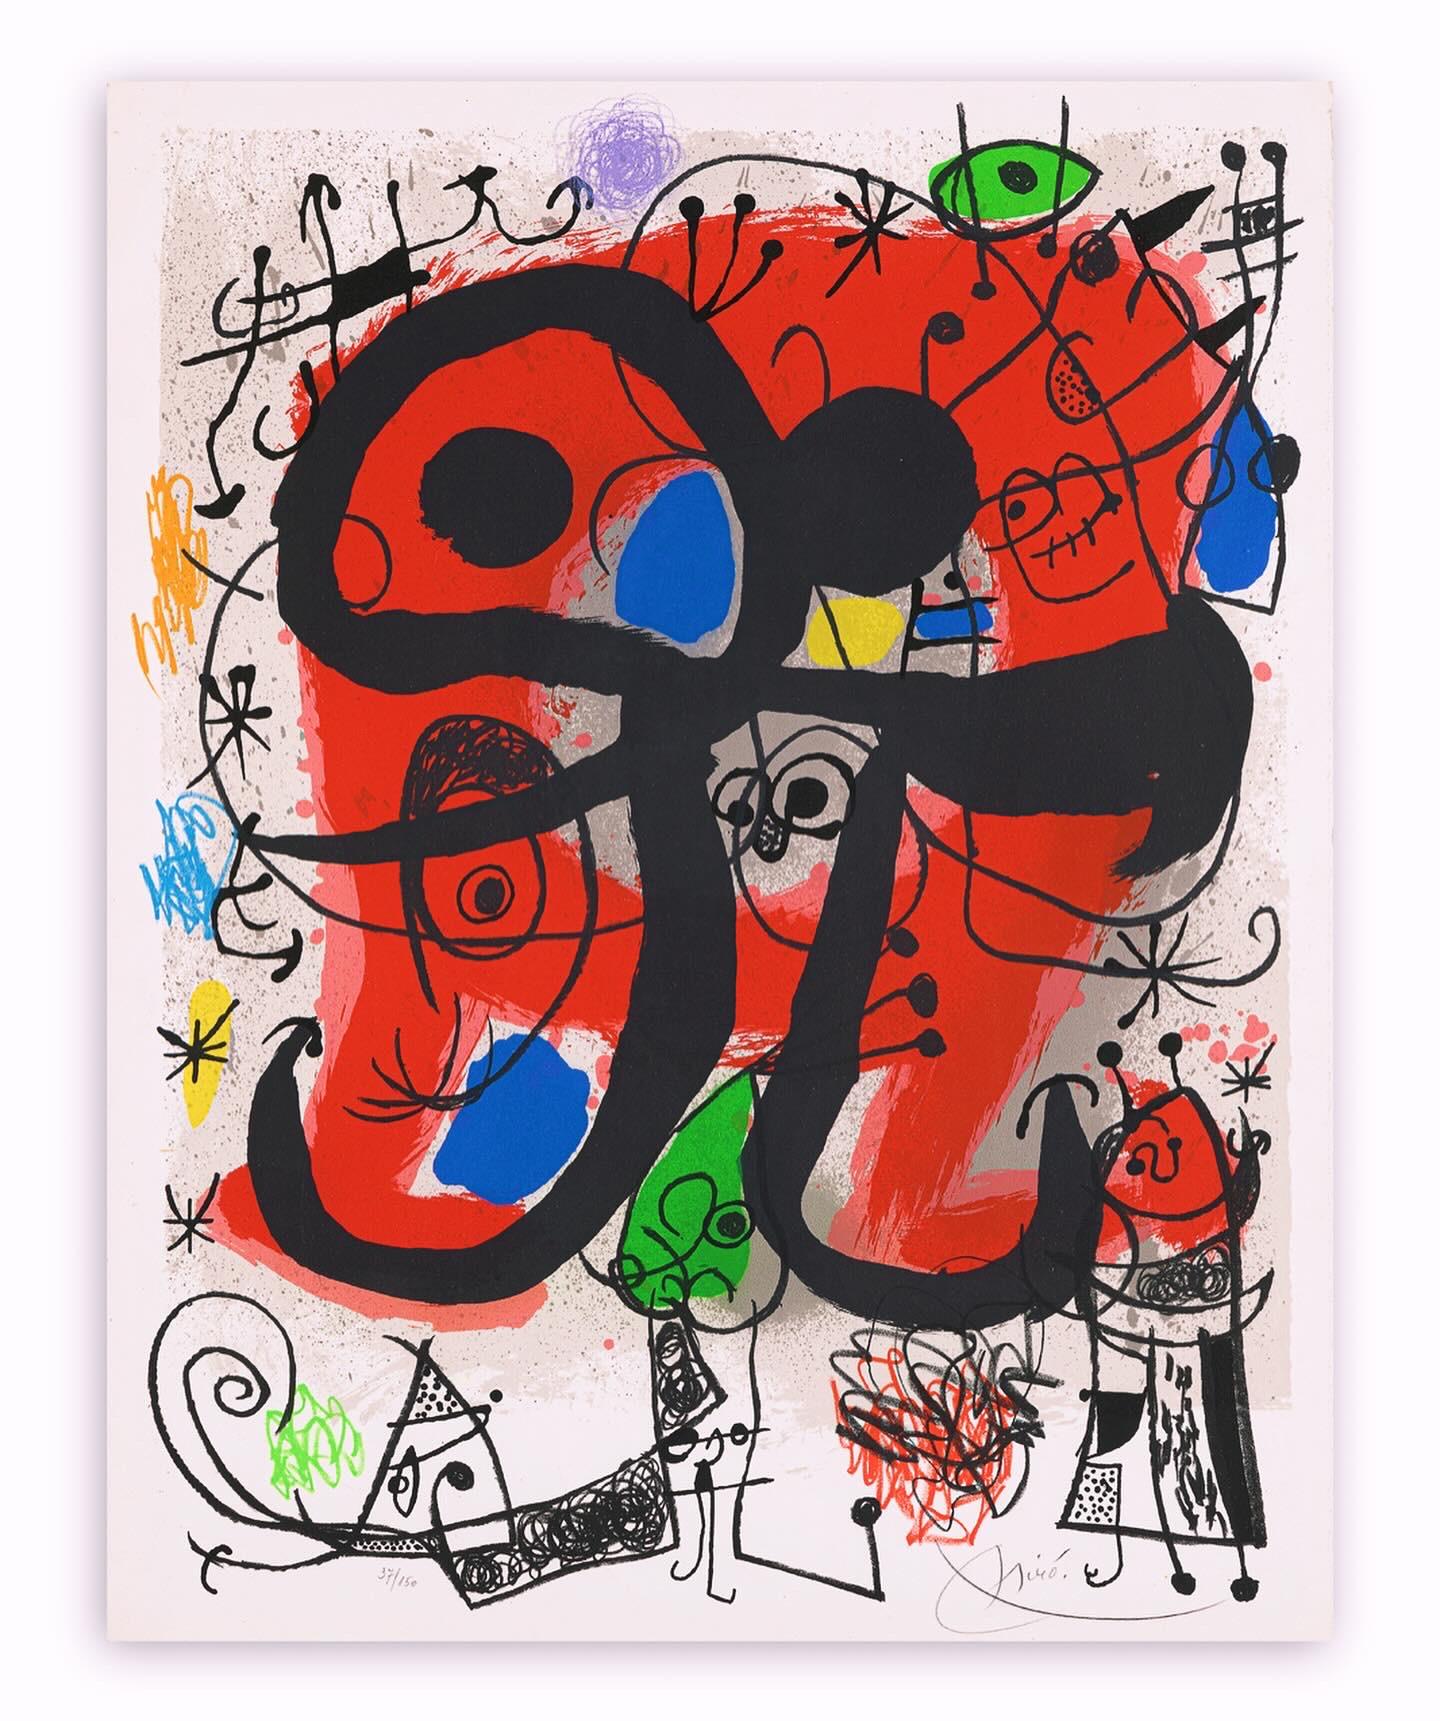 Lithographie couleur sur papier Arches, éditée en 1971
Edition limitée à 150 exemplaires
Signé à la main par Joan Miró au crayon dans la marge inférieure droite,
et numérotée 37/150 dans le coin inférieur gauche
format du papier : : 66 x 52